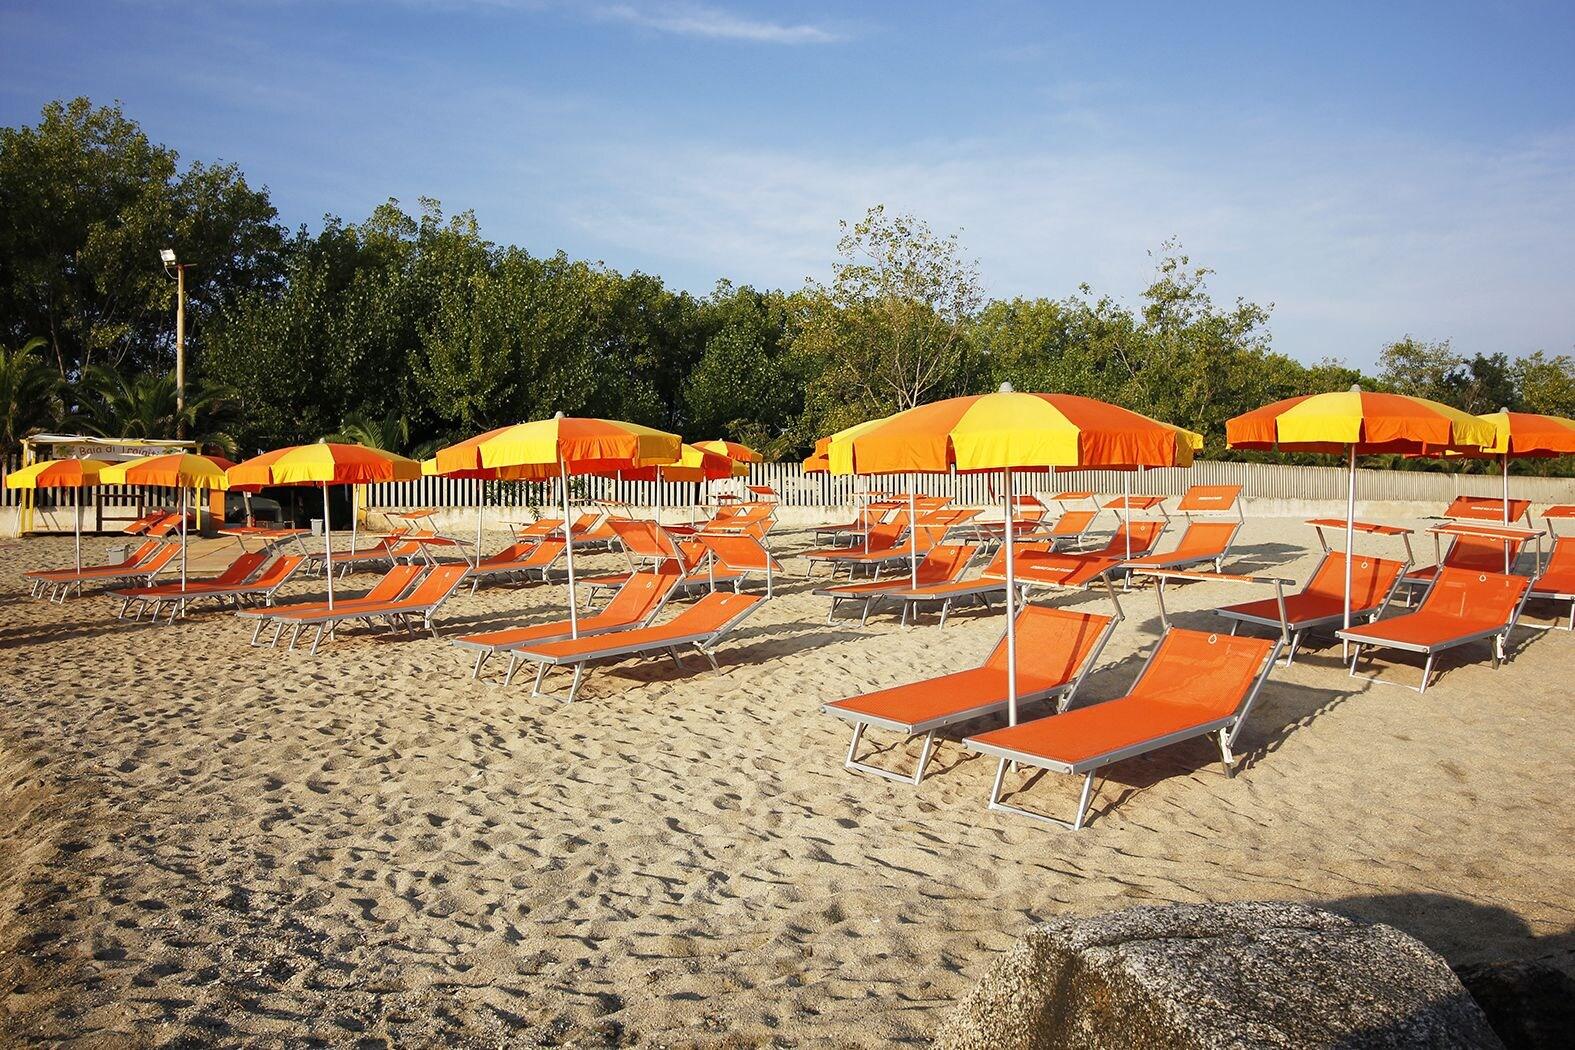 Foto de Spiaggia di Trainiti ubicado en área natural